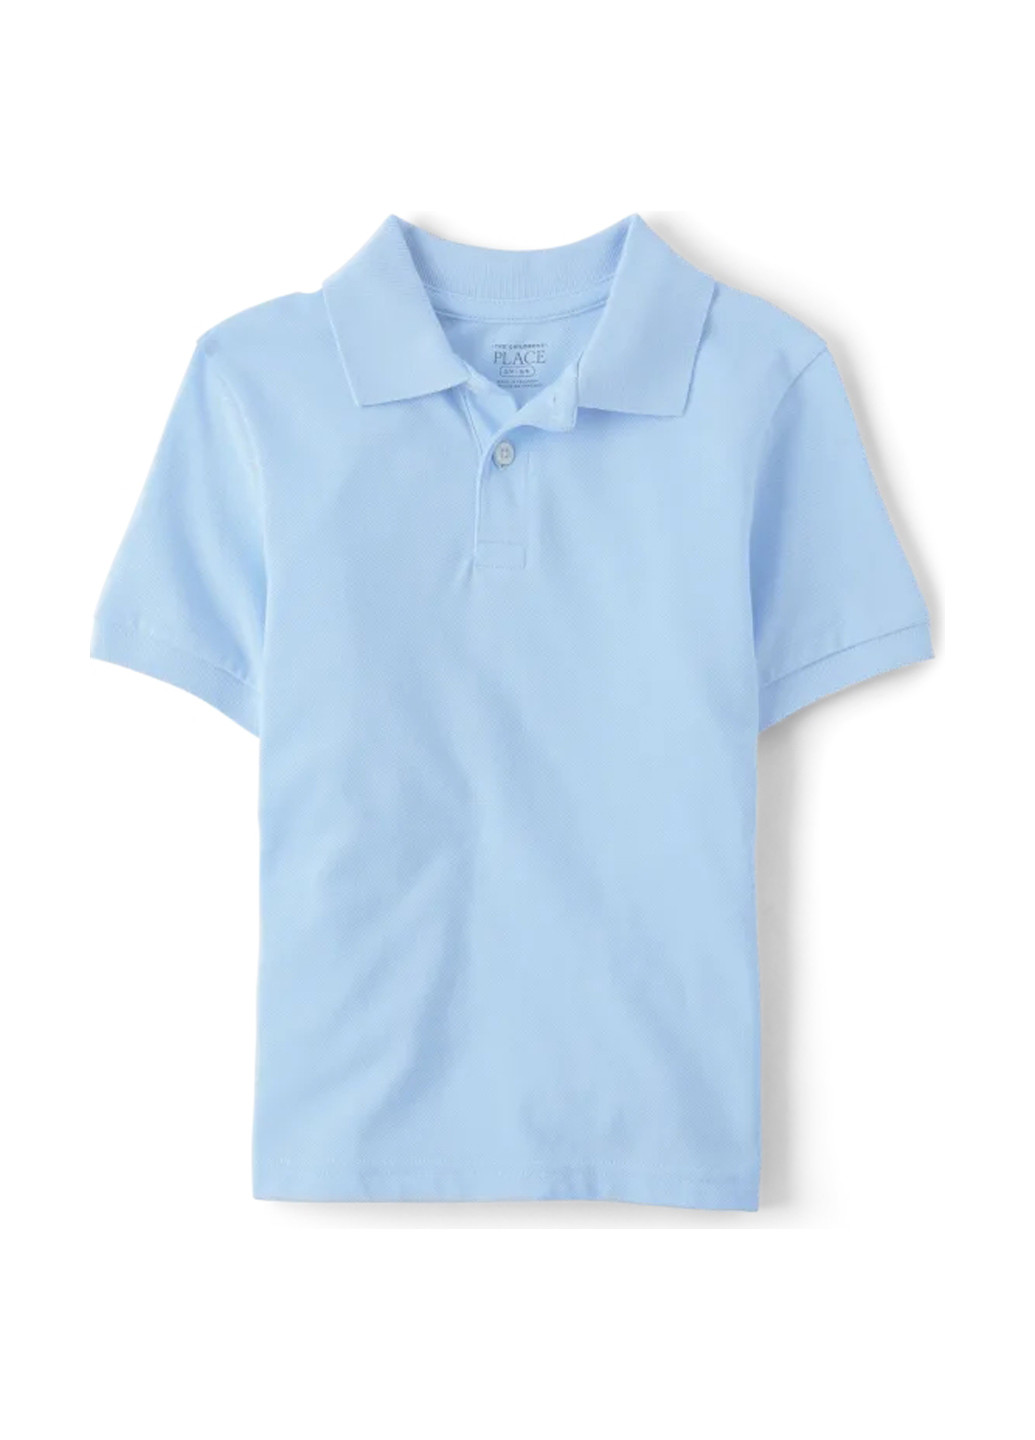 Голубой детская футболка-поло для мальчика The Children's Place однотонная